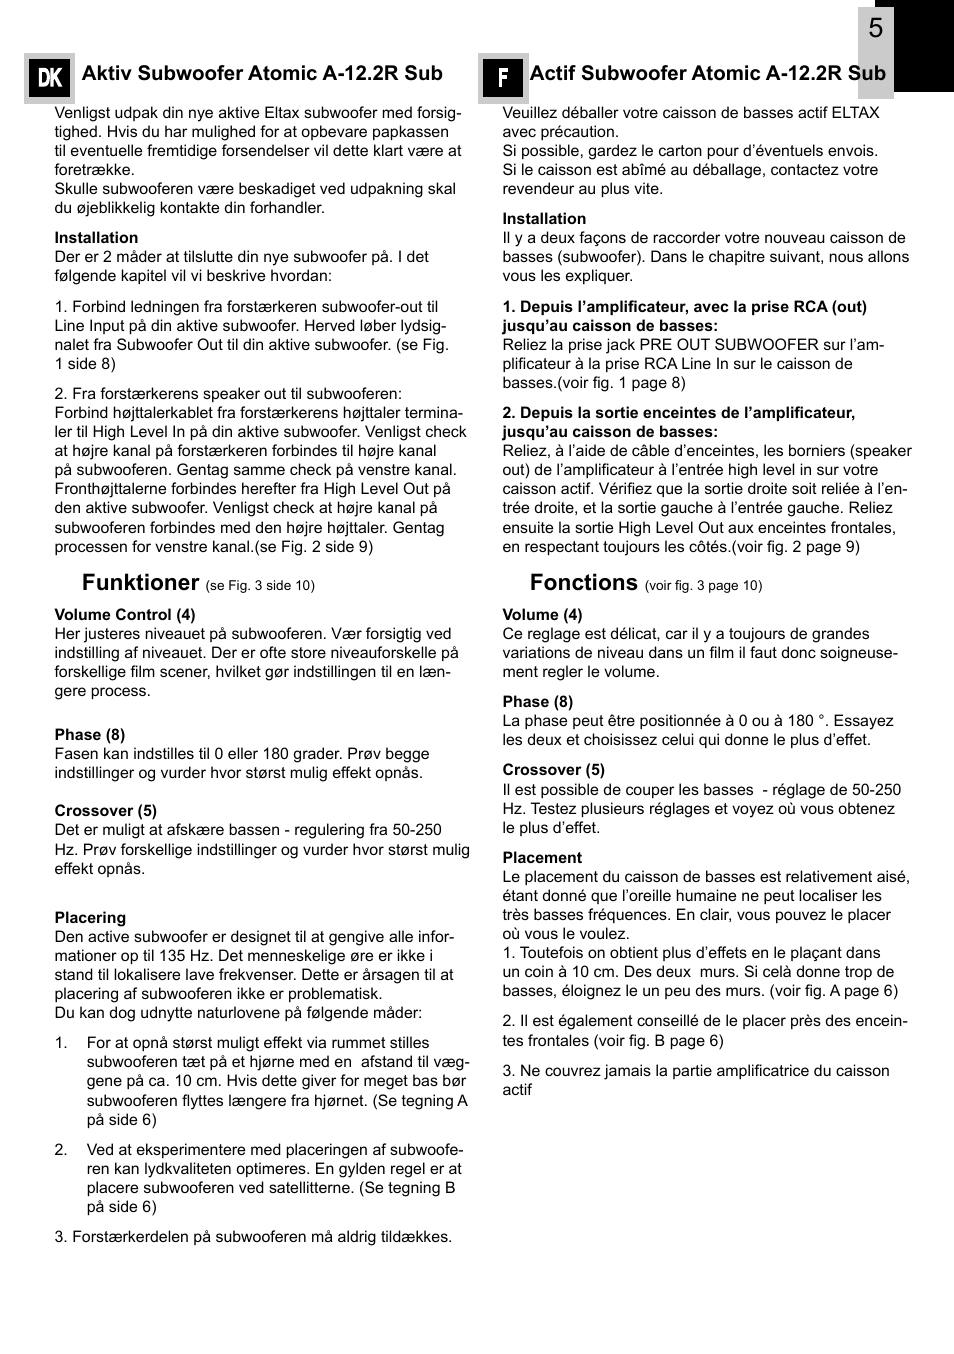 Tilskud produktion Skorpe Dk f, Funktioner, Fonctions | Eltax Atomic A-12.2R User Manual | Page 5 /  12 | Original mode